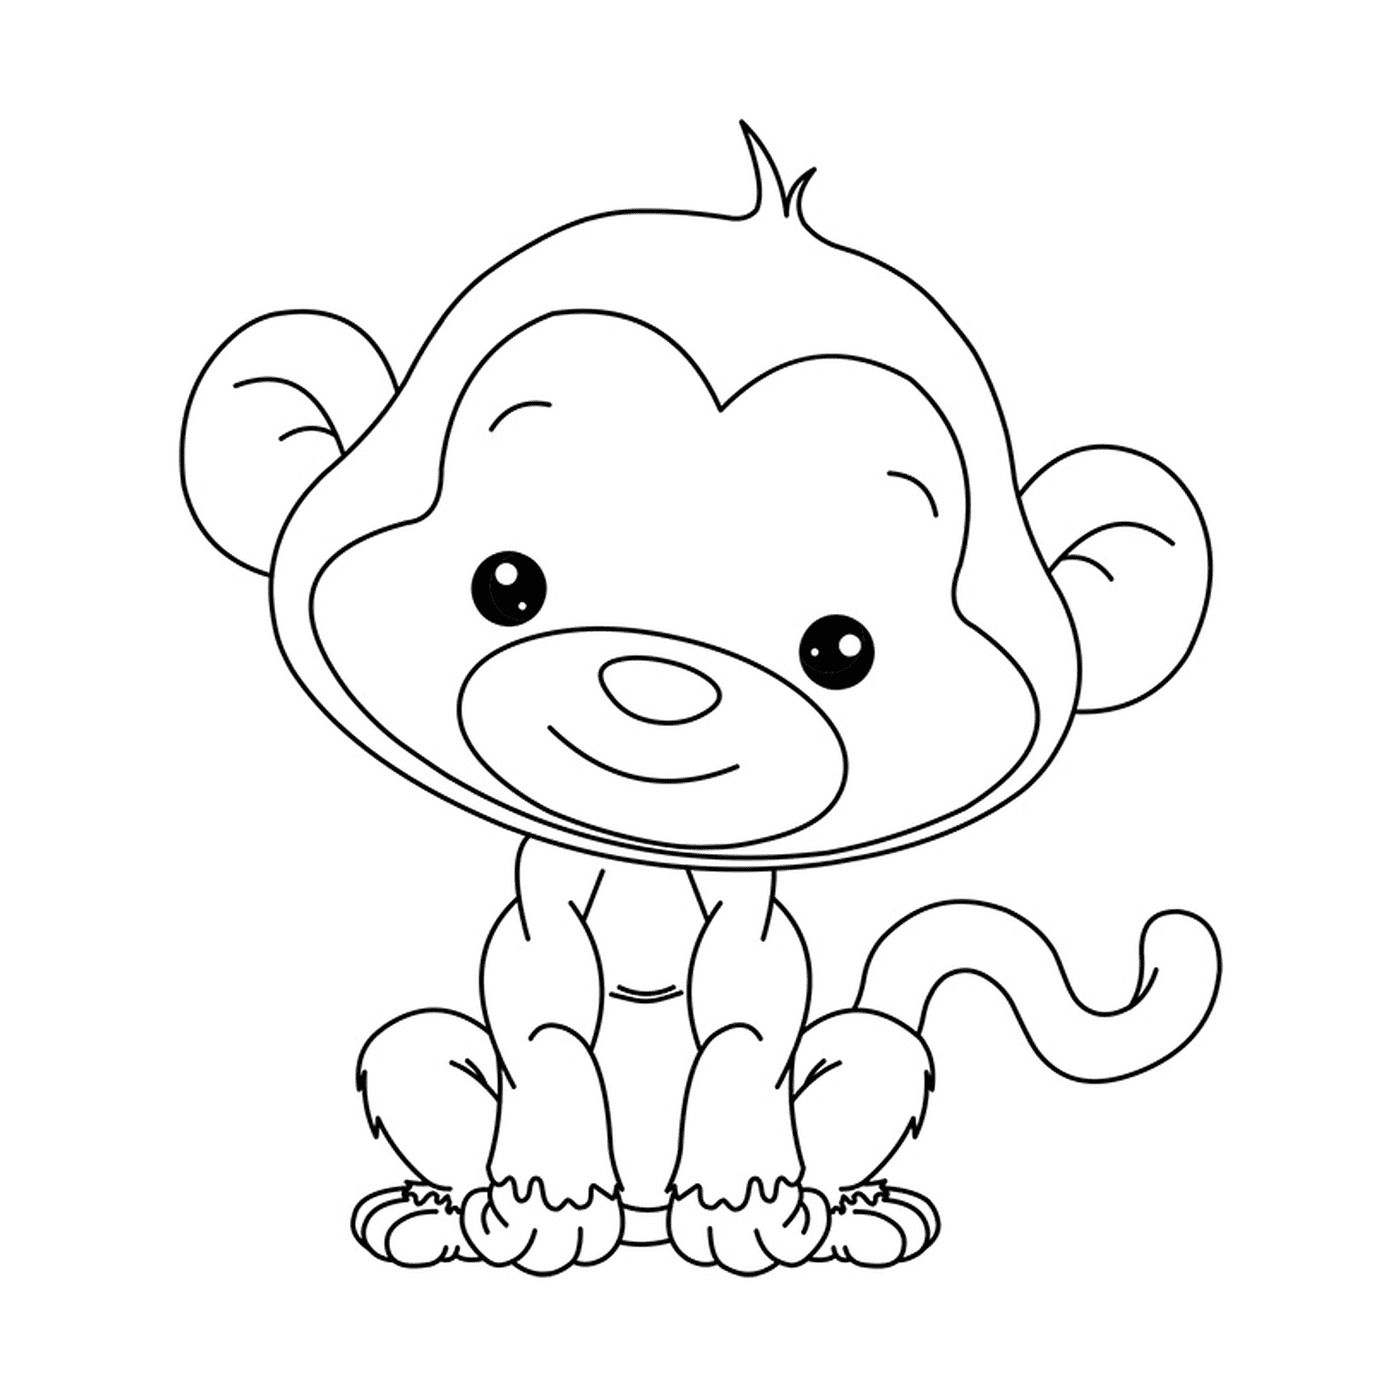  अच्छा छोटा बंदर 